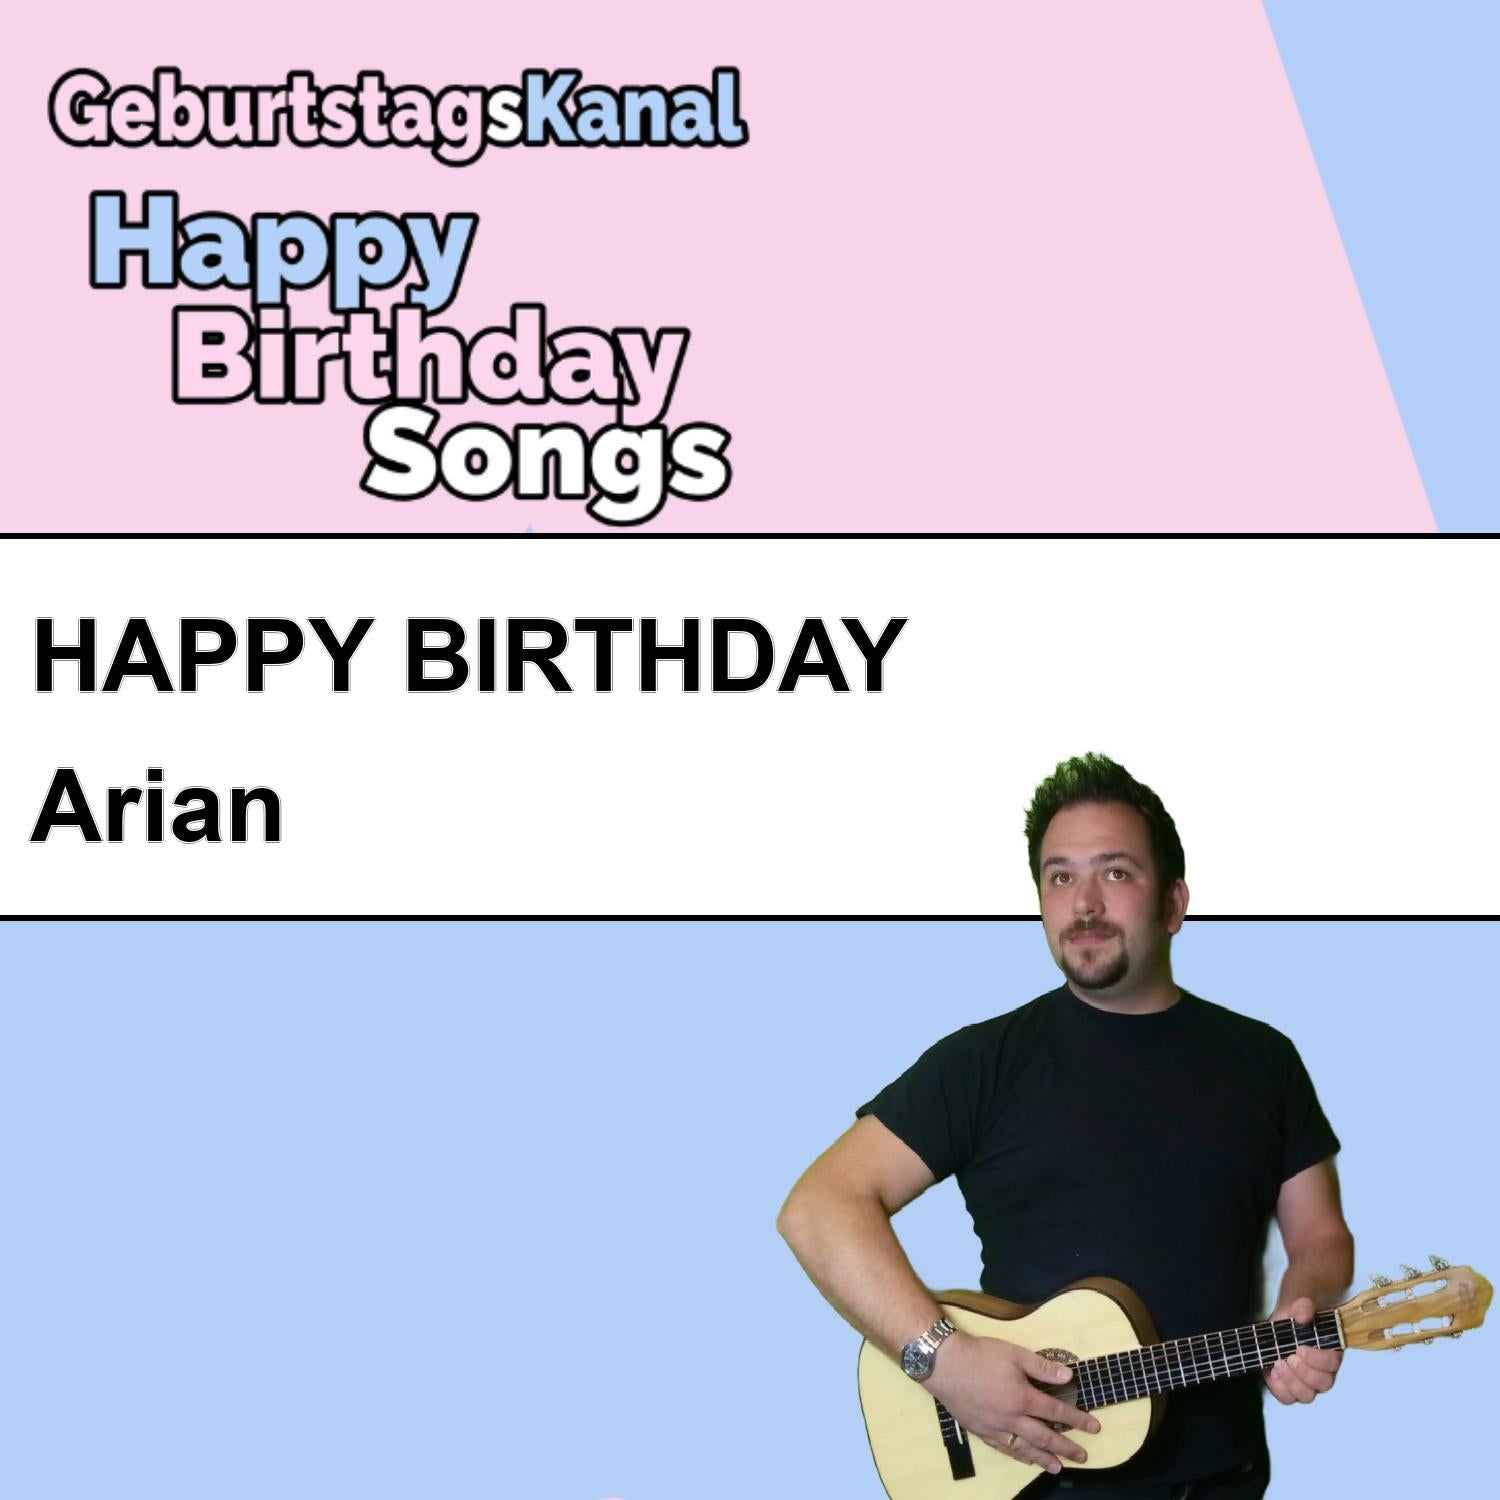 Produktbild Happy Birthday to you Arian mit Wunschgrußbotschaft